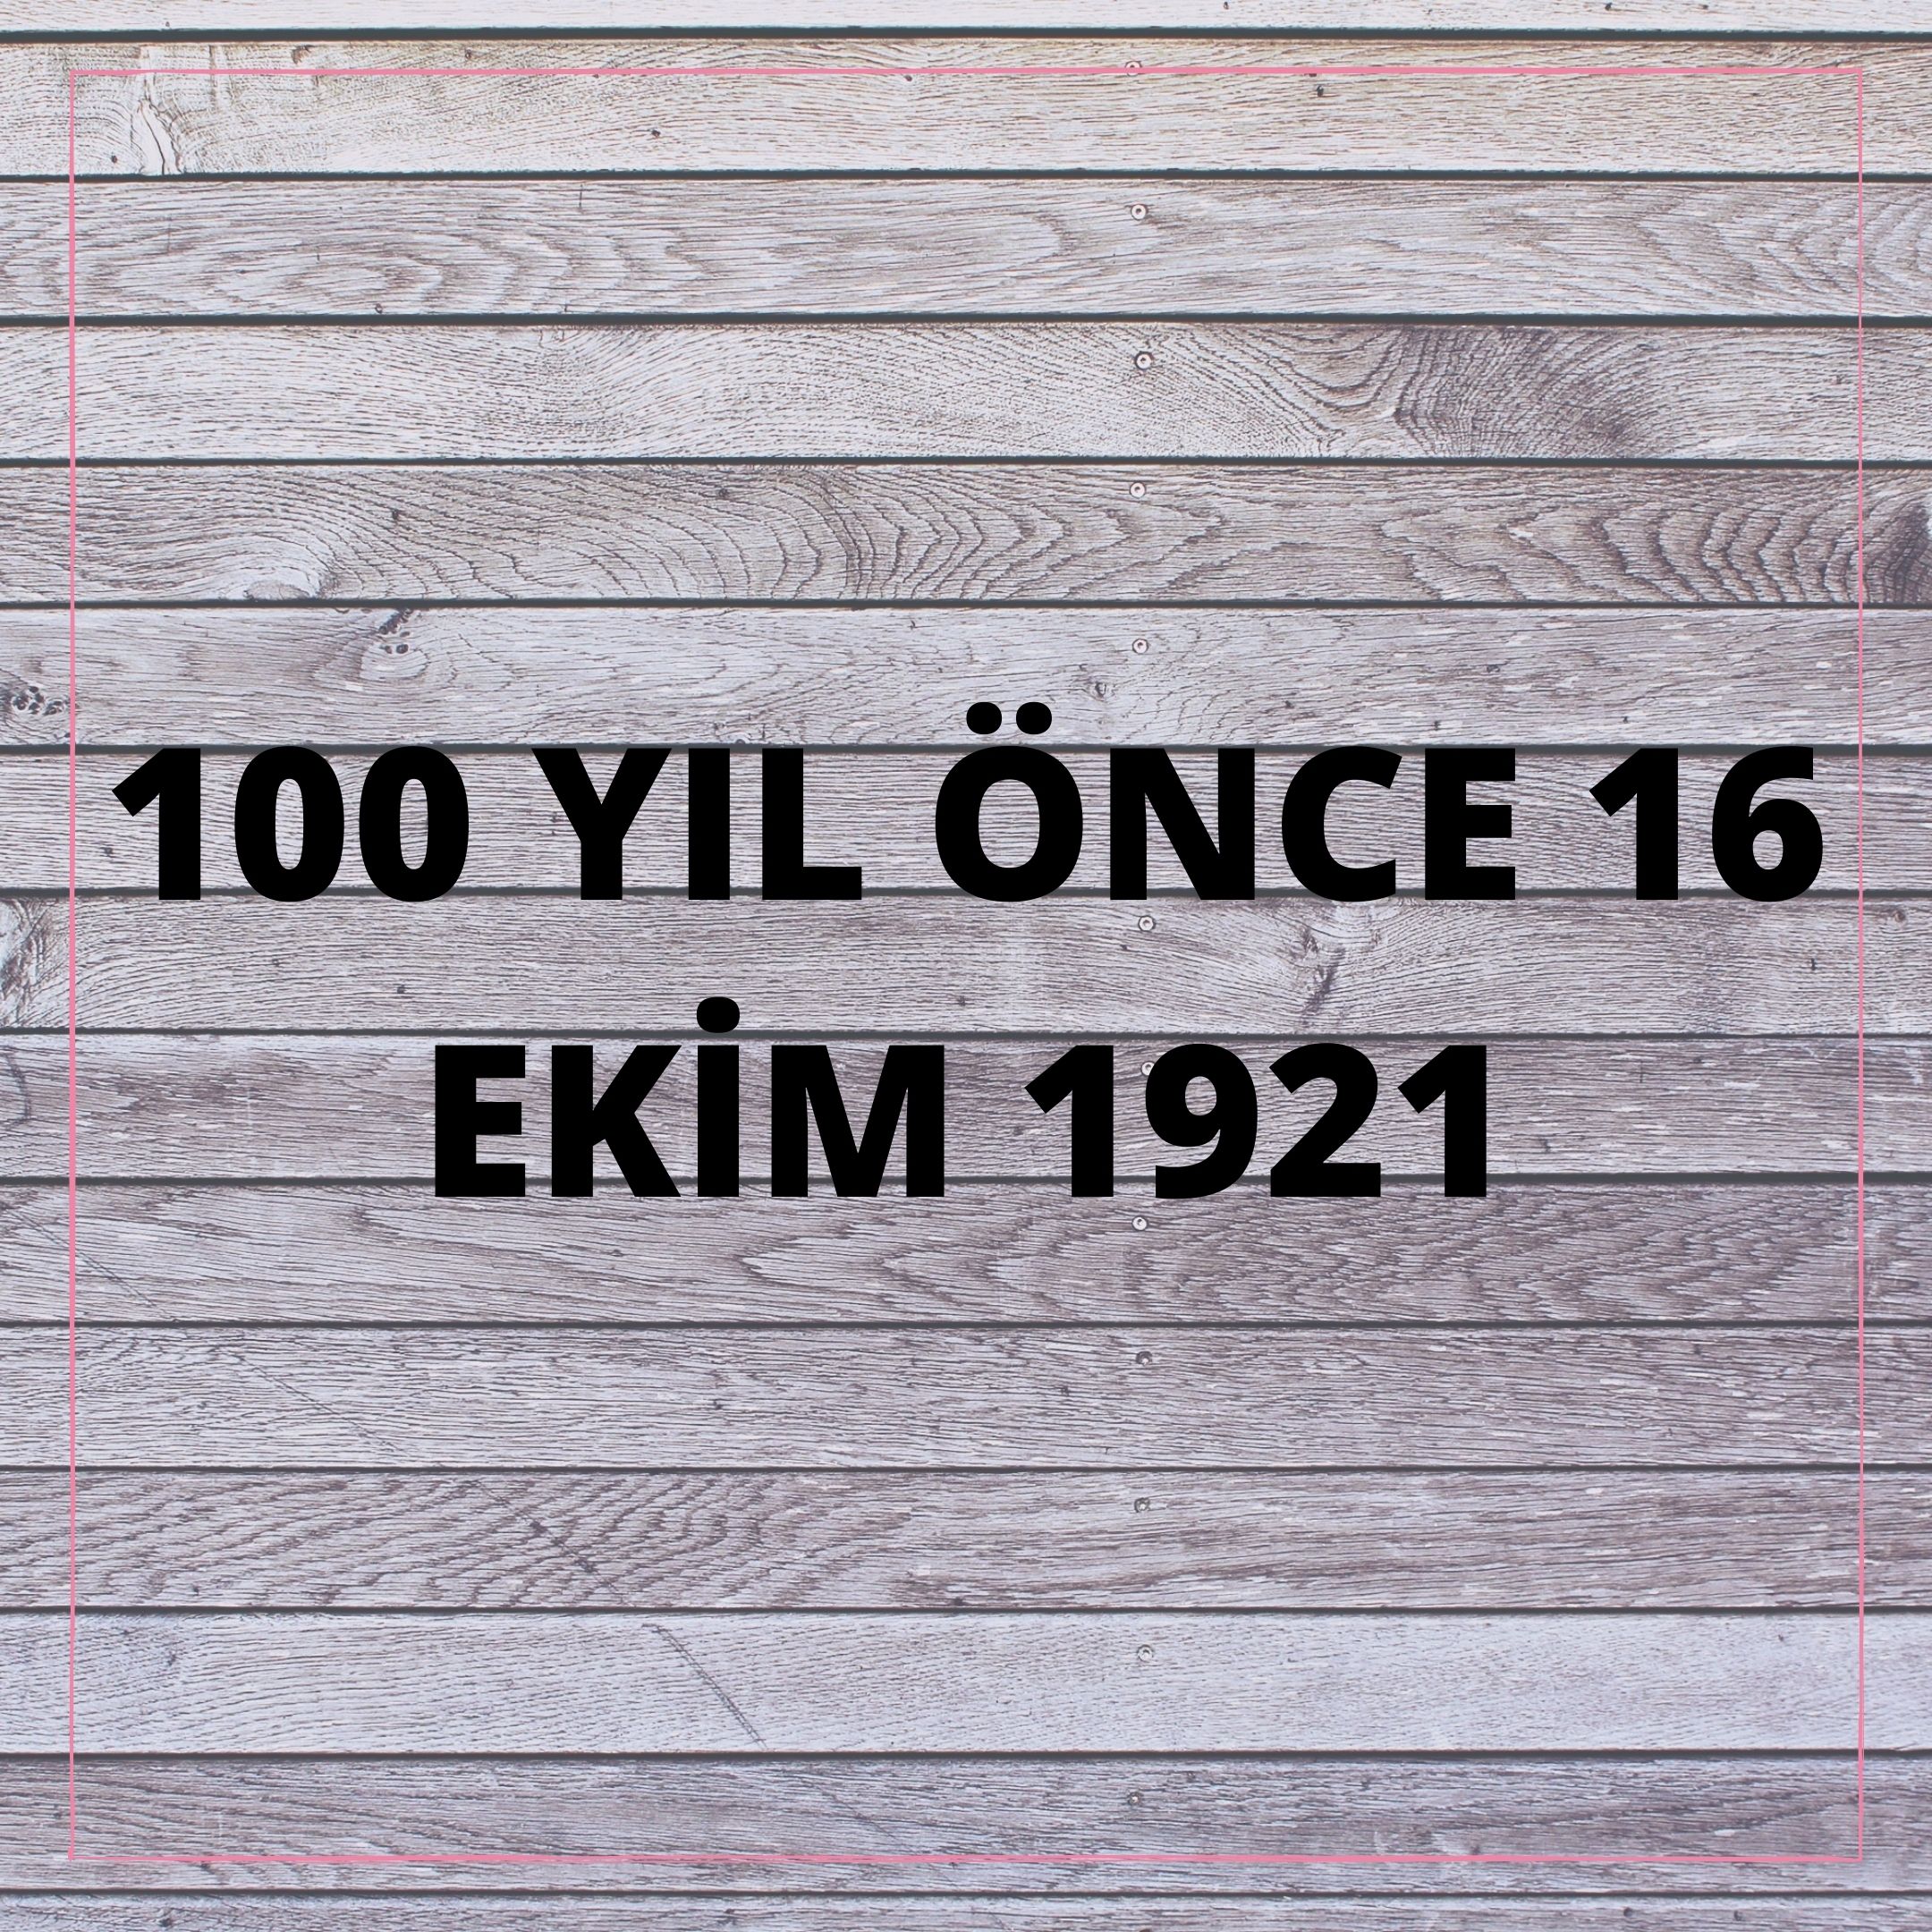 100 YIL ÖNCE 16 EKİM